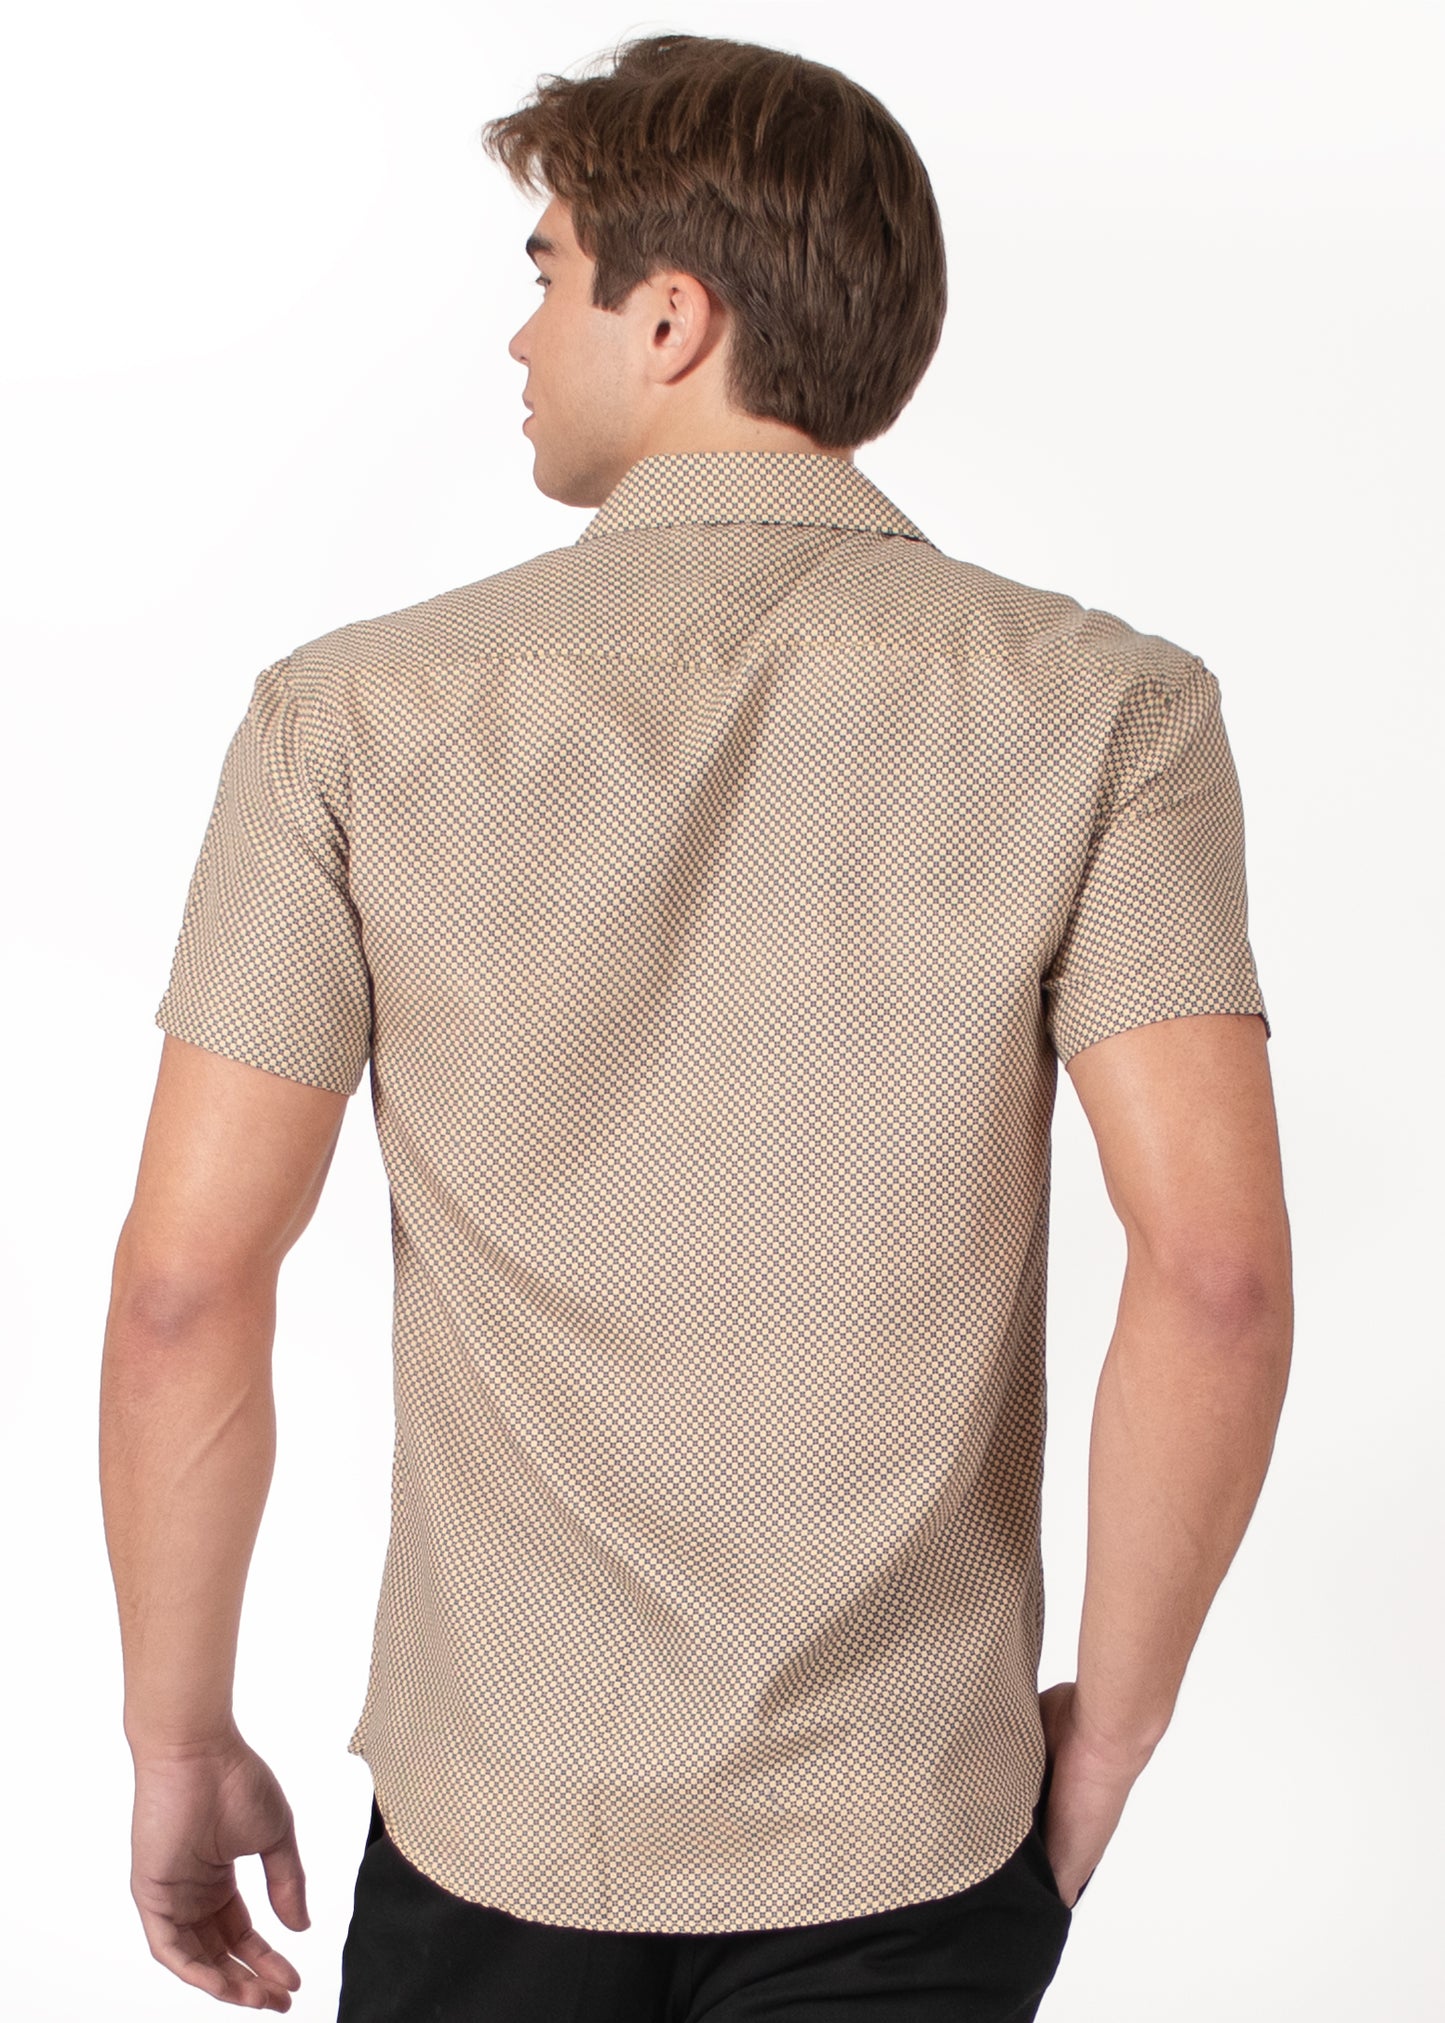 'Dot Dash' Short Sleeve Shirt